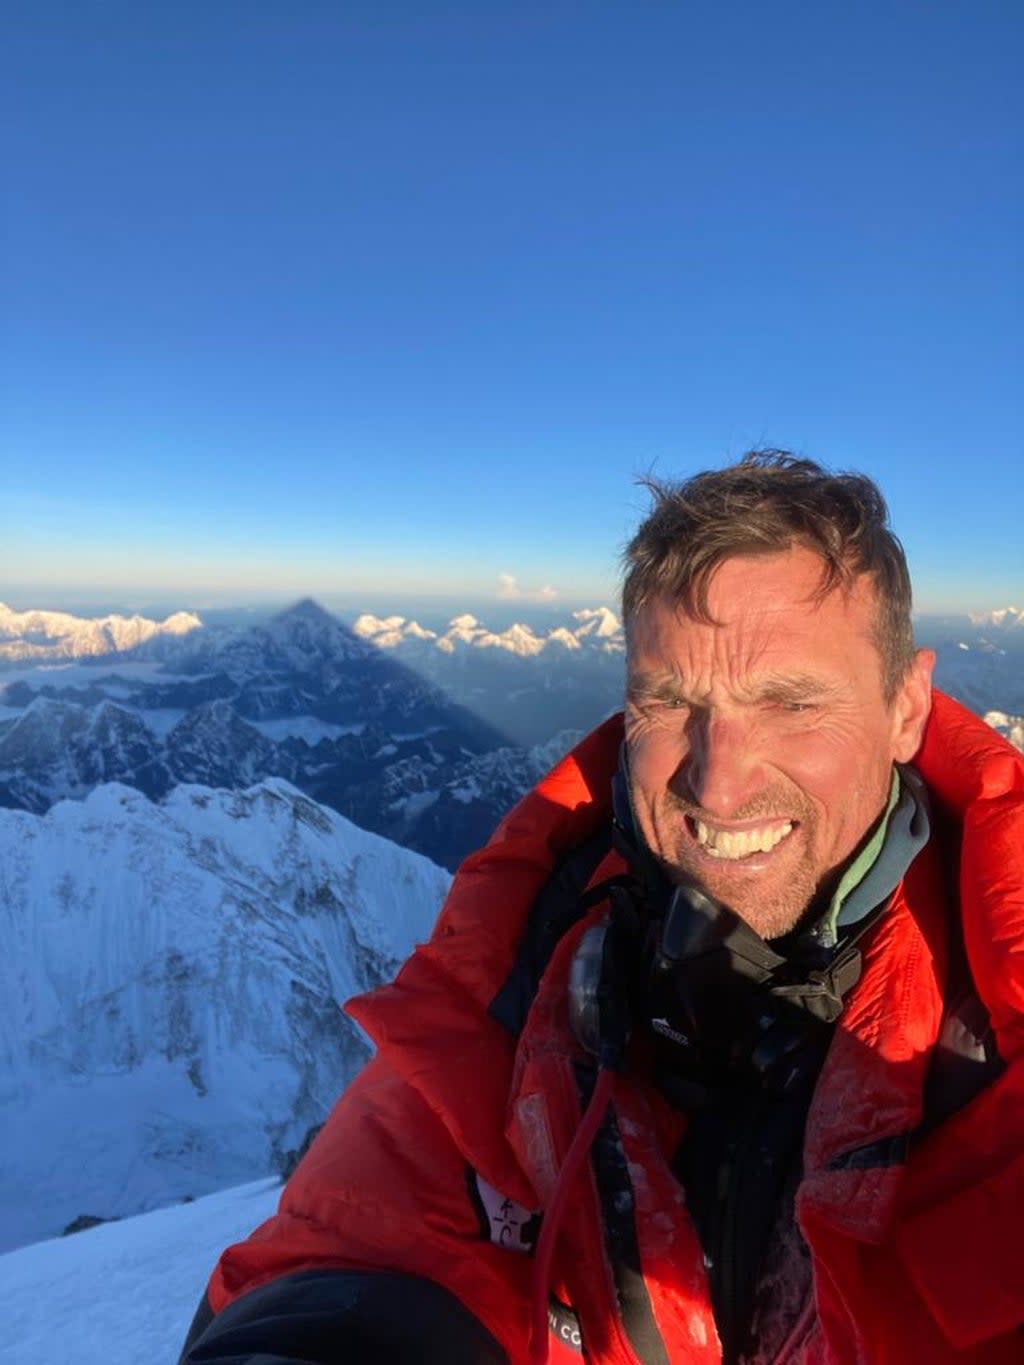 British mountaineer Kenton Cool at the summit of Mount Everest (Kenton Cool)